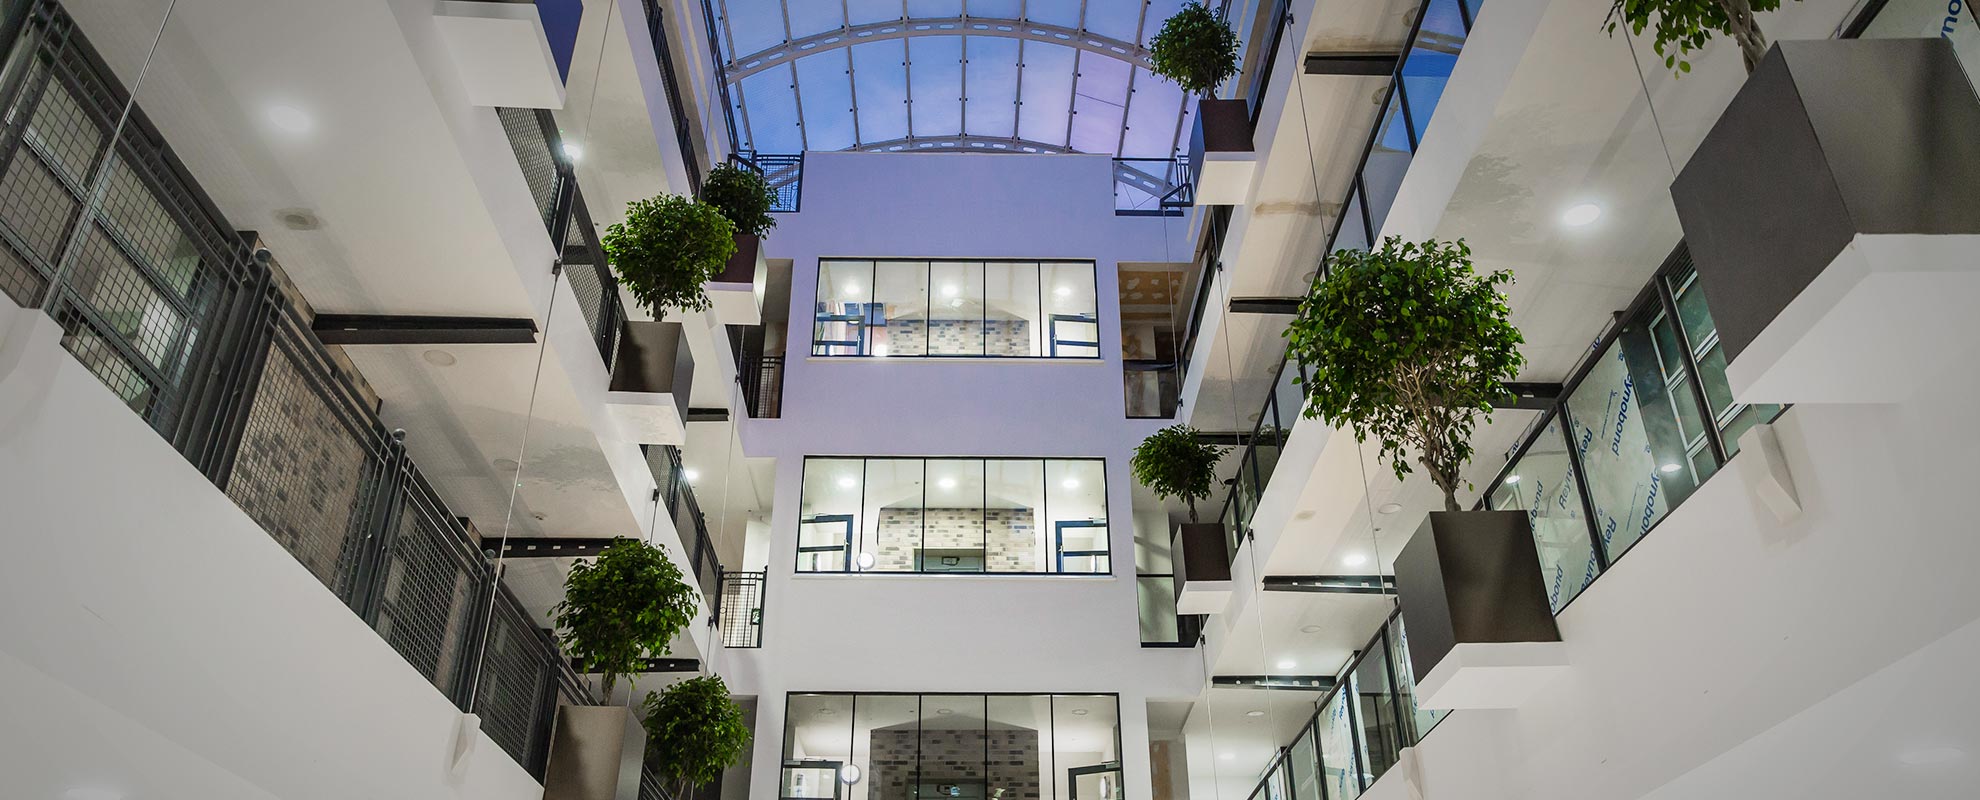 Large commercial atrium utilising our commercial aluminium windows